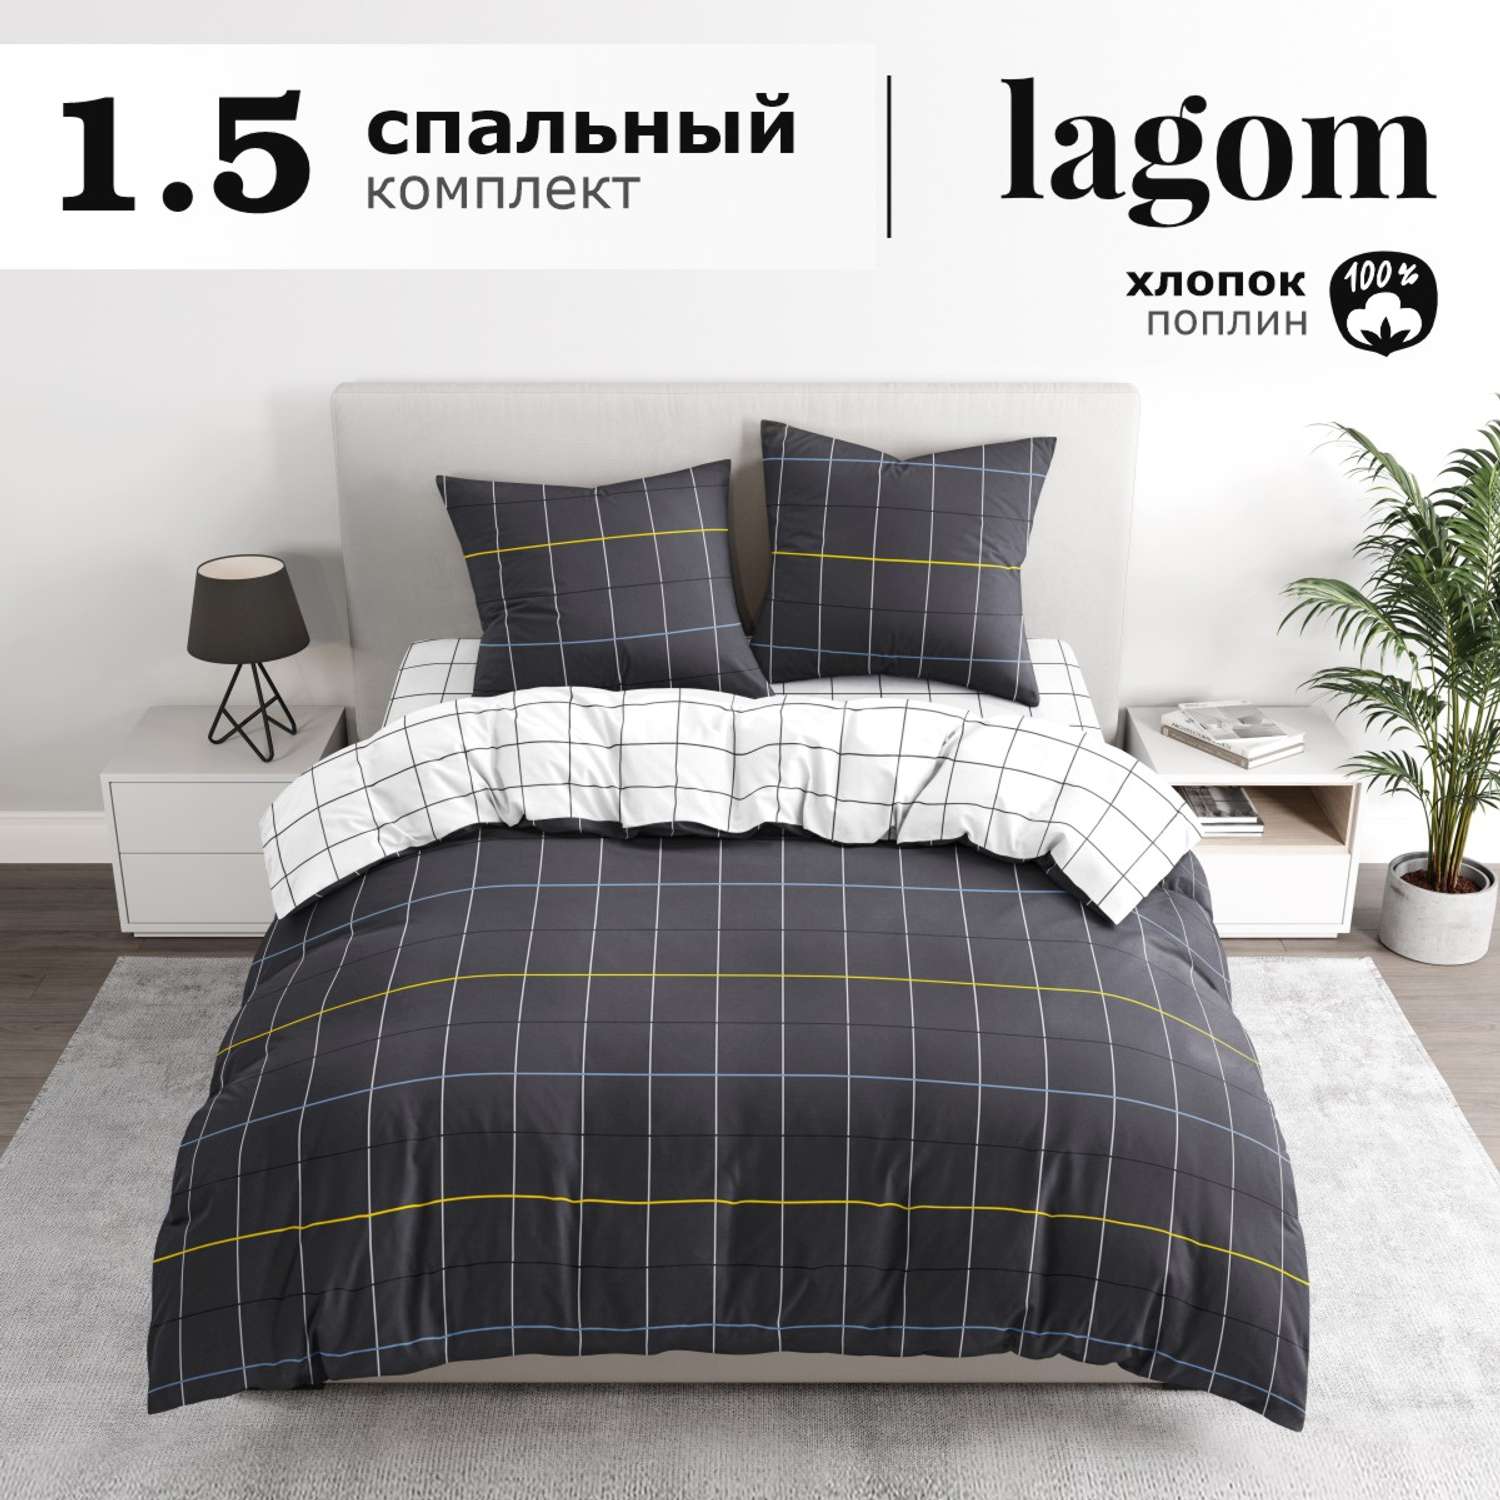 Комплект постельного белья lagom Питео 1.5-спальный наволочки 70х70 - фото 2